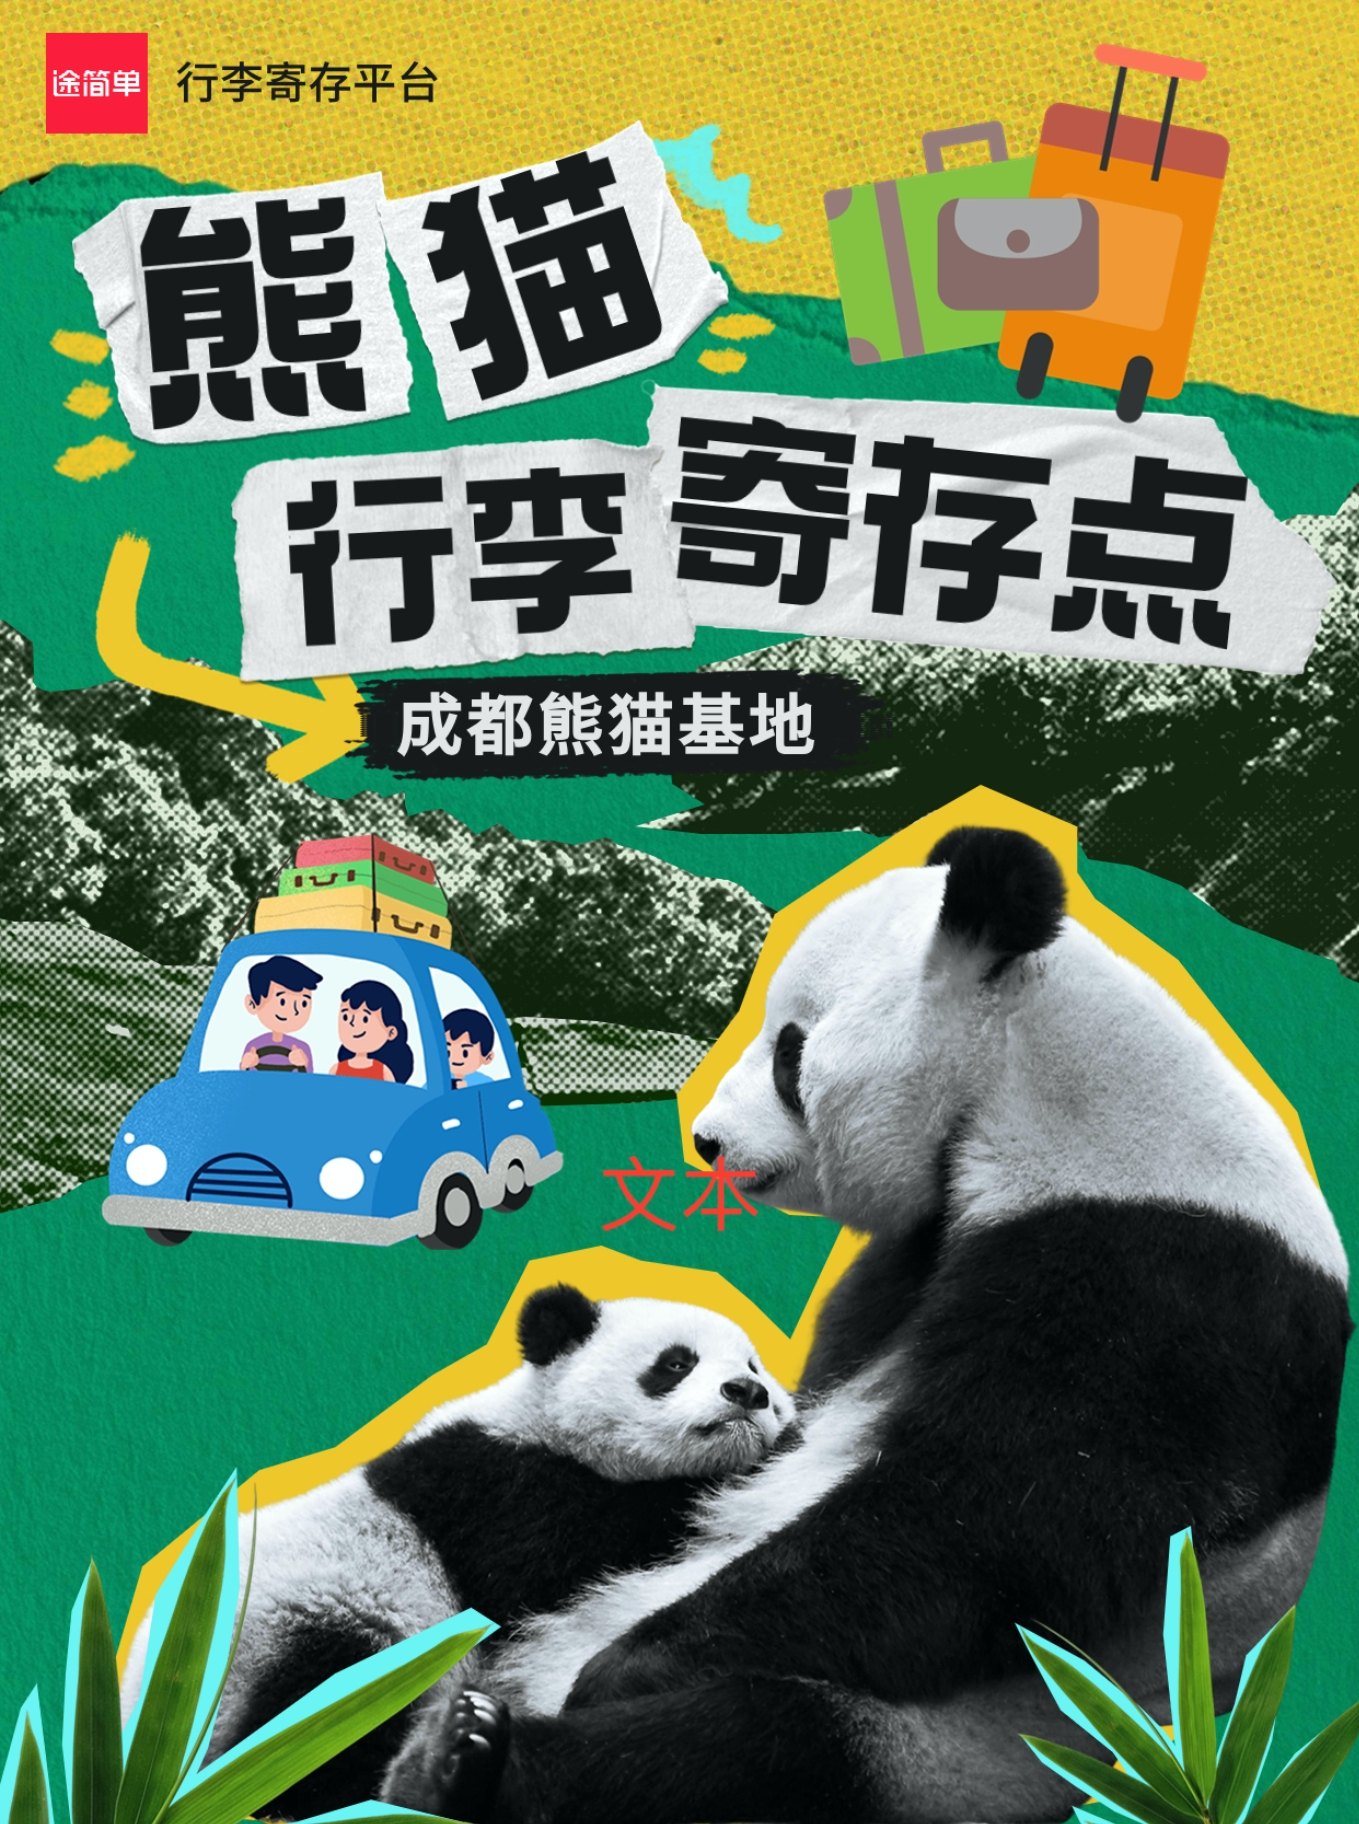 成都大熊猫基地有寄存行李的地方吗？成都旅游行李寄存指南